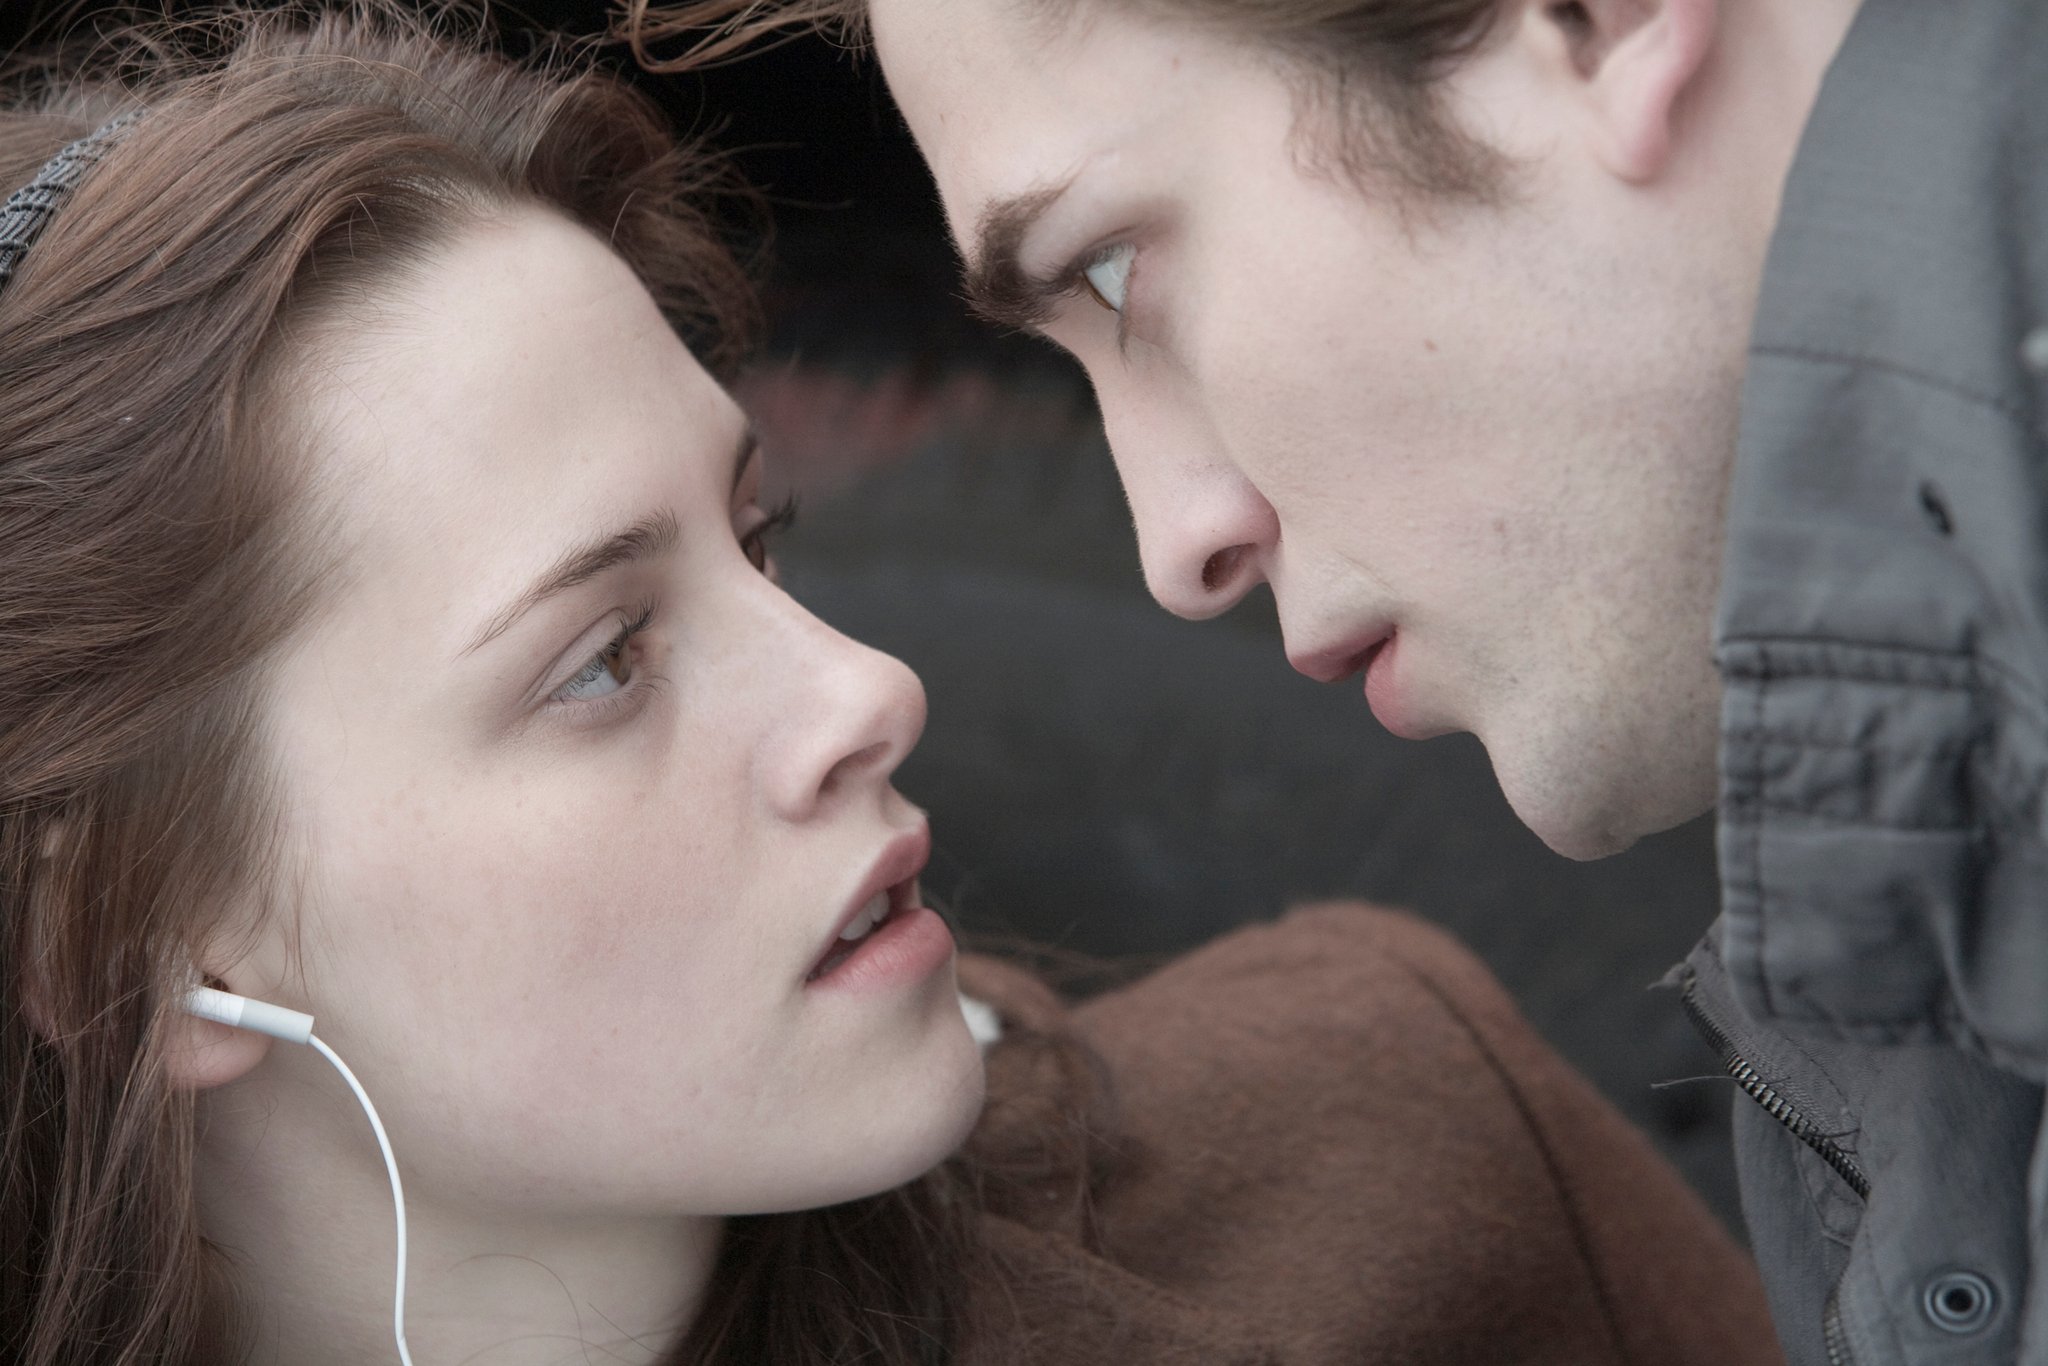 Twilight chapitre 1 Fascination : Robert Pattinson aurait pu être condamné pour avoir embrassé Kristen Stewart